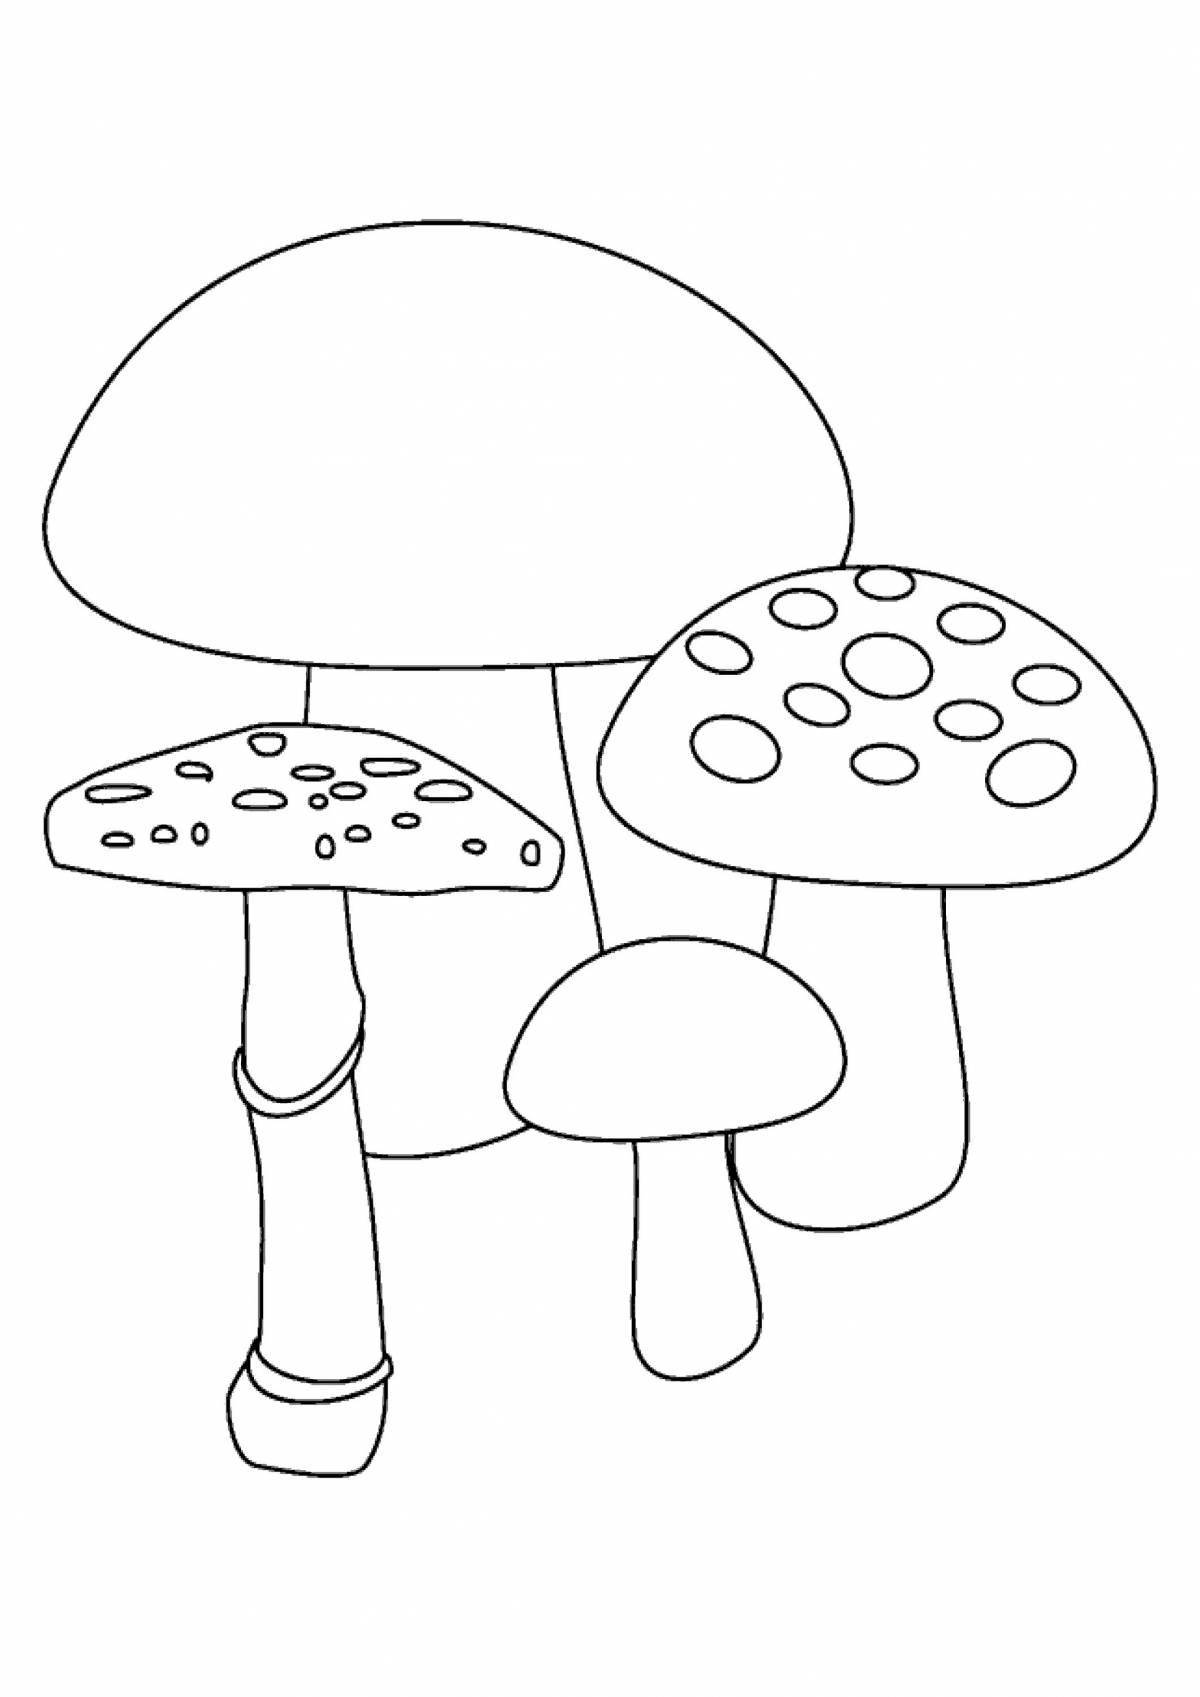 Coloring book joyful mushroom